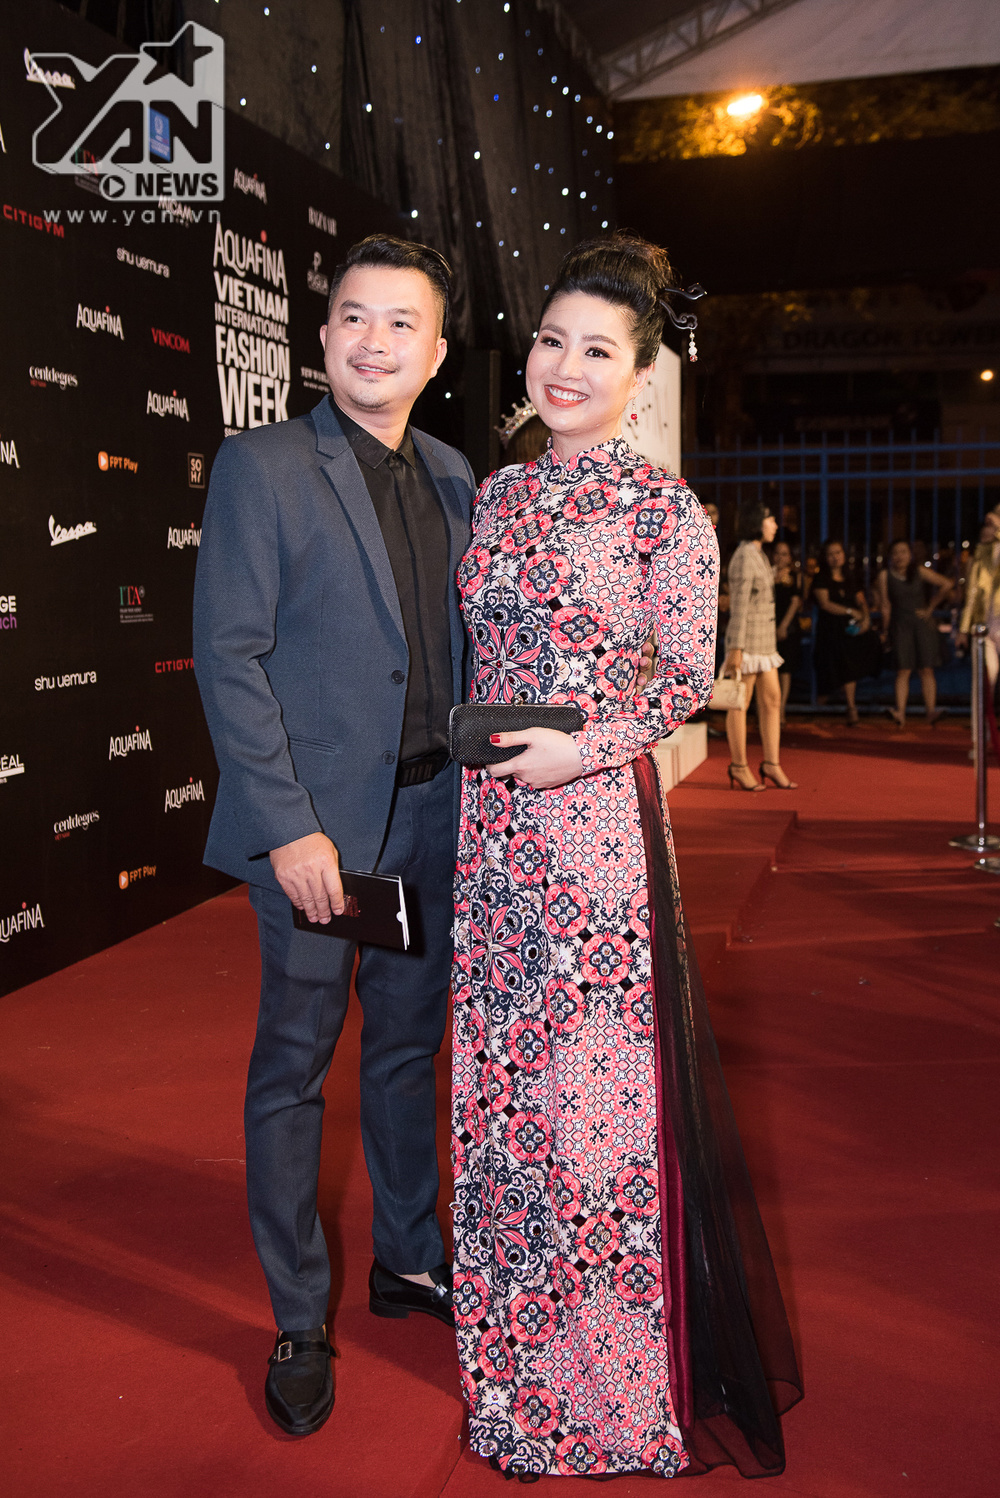  
Diễn viên Lê Khánh nổi bật trên thảm đỏ với phong cách cổ điển, sang trọng trong tà áo dài in họa tiết bắt mắt, kết hợp cùng trâm cài đầu đài các khi sánh đôi cùng ông xã.